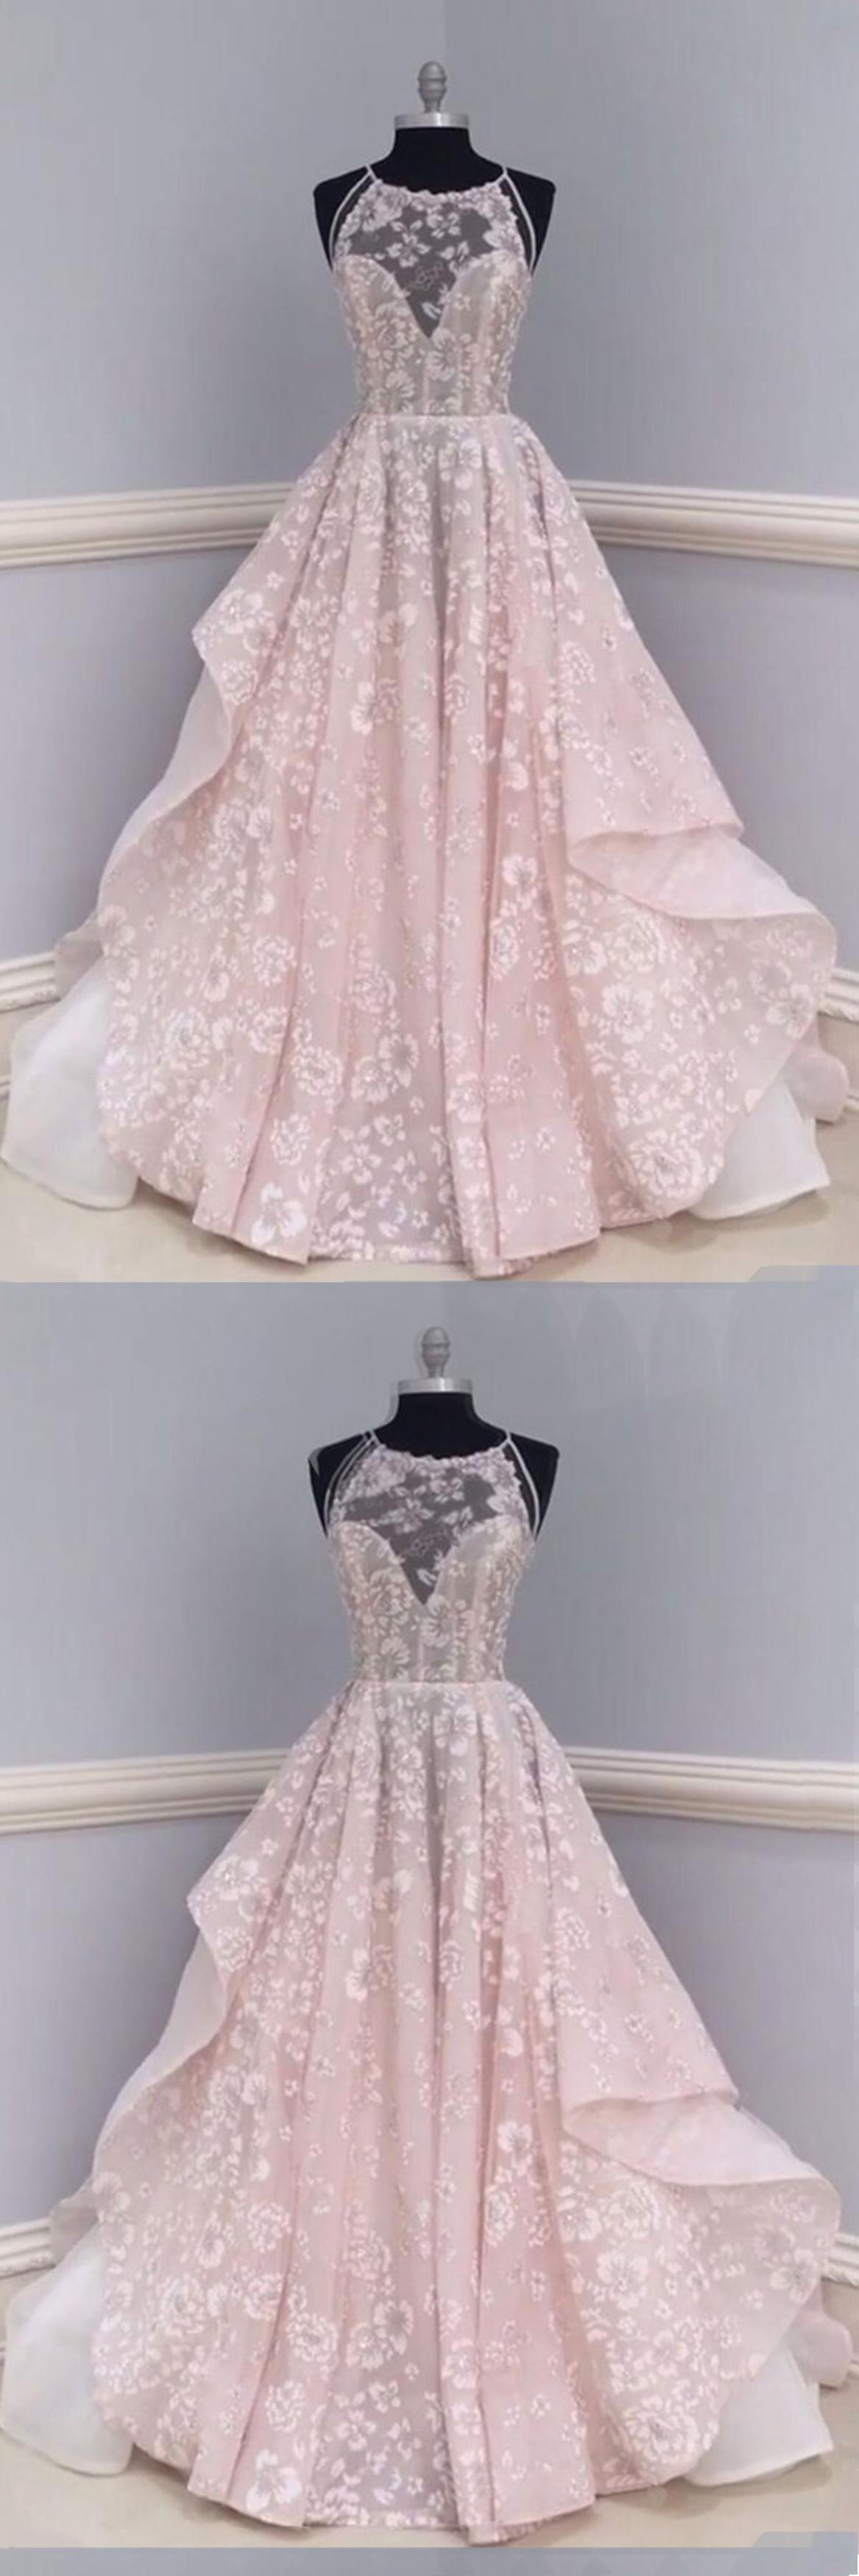 Unique Lace Tulle Long Prom Dress, Lace Wedding Dress